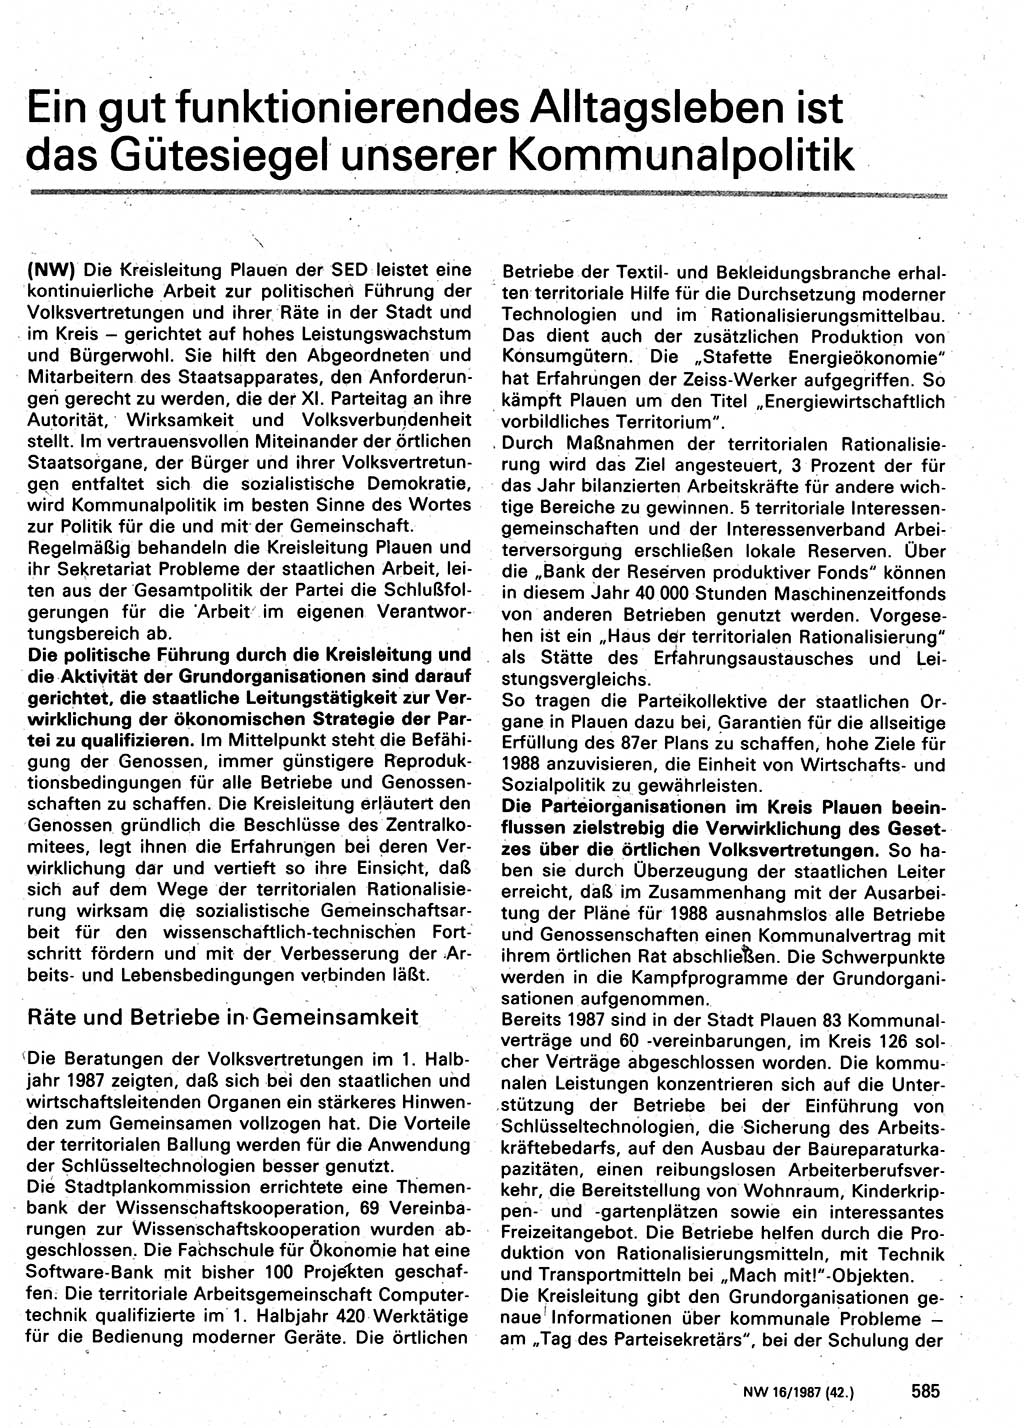 Neuer Weg (NW), Organ des Zentralkomitees (ZK) der SED (Sozialistische Einheitspartei Deutschlands) für Fragen des Parteilebens, 42. Jahrgang [Deutsche Demokratische Republik (DDR)] 1987, Seite 585 (NW ZK SED DDR 1987, S. 585)